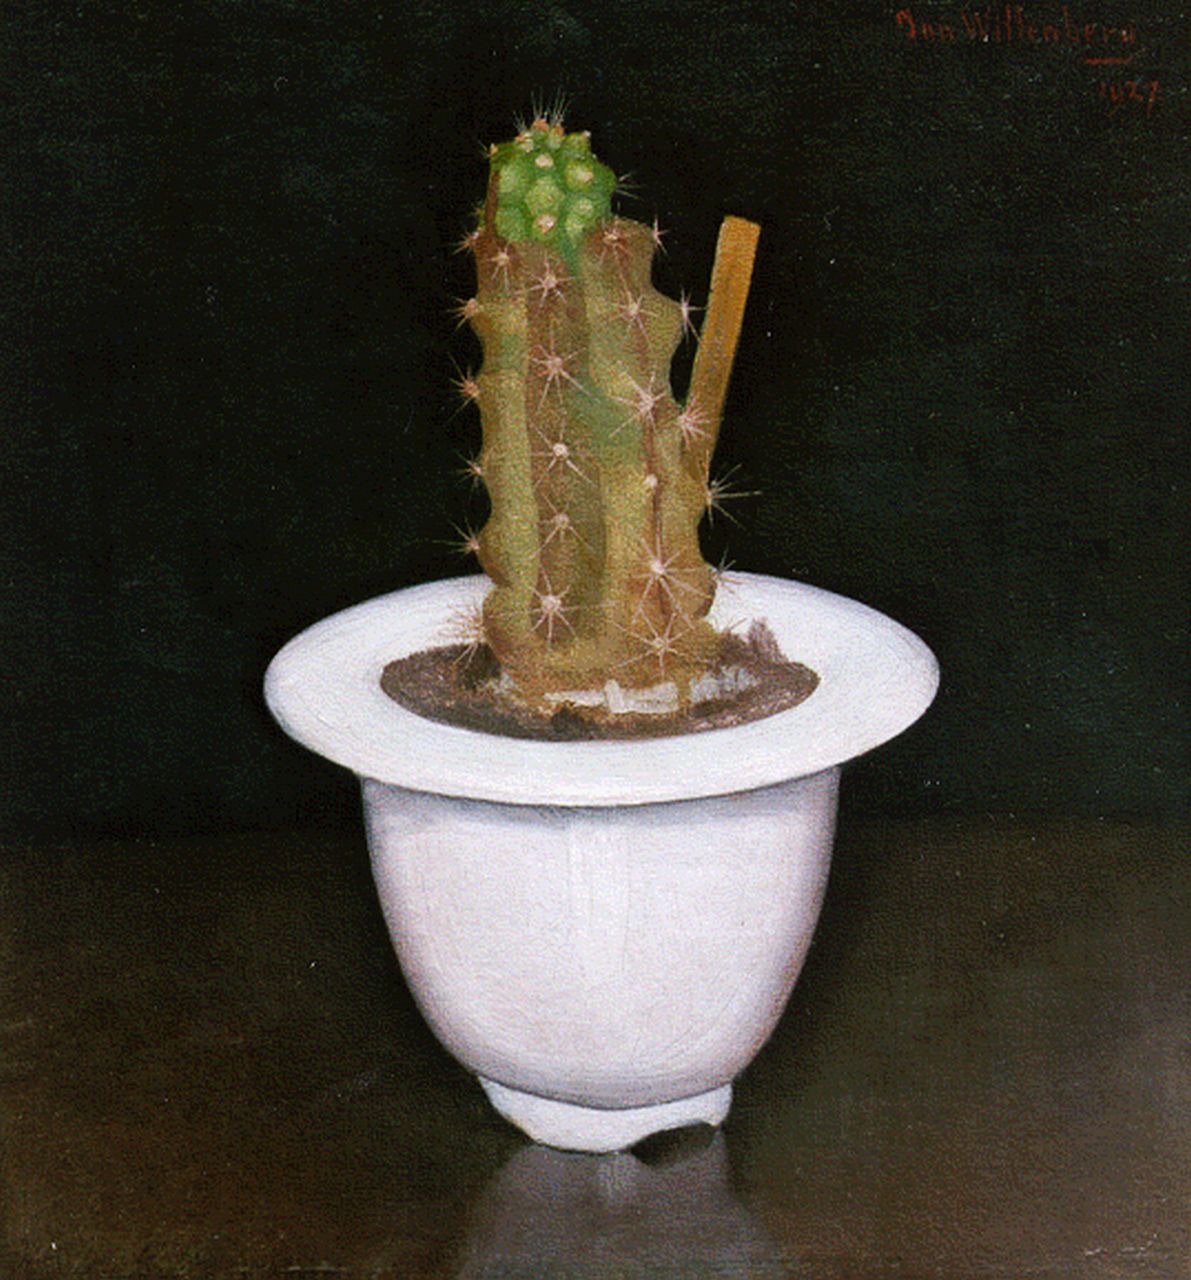 Wittenberg J.H.W.  | 'Jan' Hendrik Willem Wittenberg, Cactus in wit potje, olieverf op doek op paneel 17,0 x 15,7 cm, gesigneerd rechtsboven en gedateerd 1927